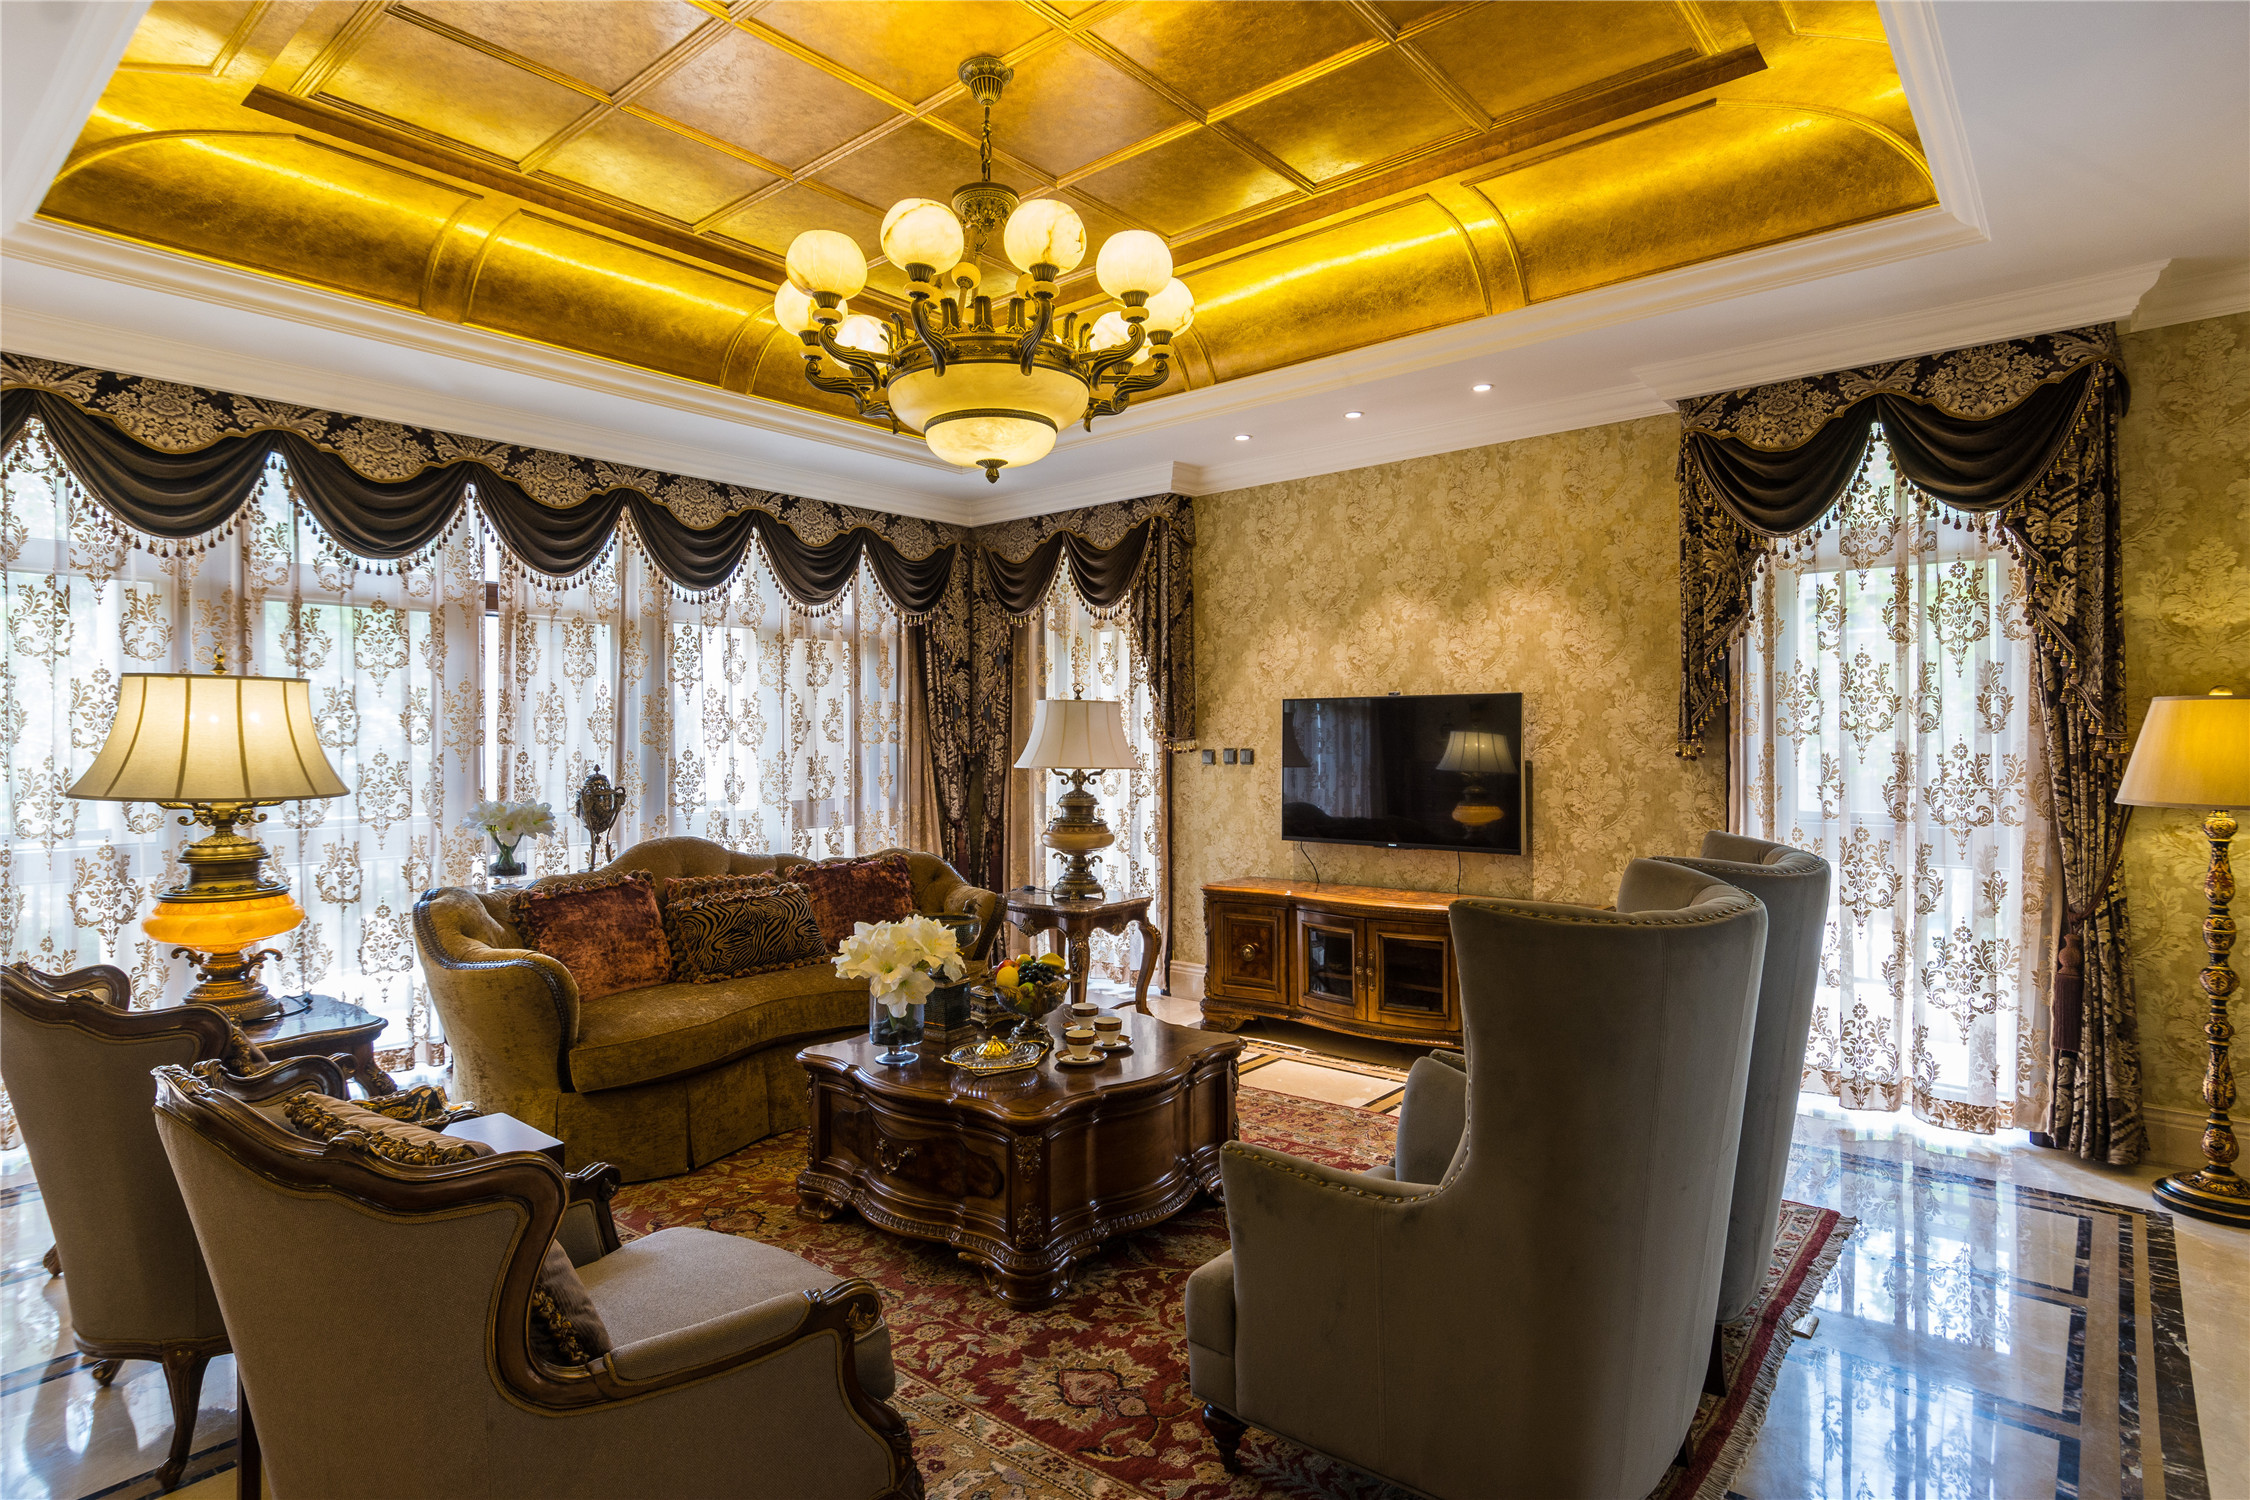 别墅装修,豪华型装修,140平米以上装修,客厅,欧式风格,吊顶,金色